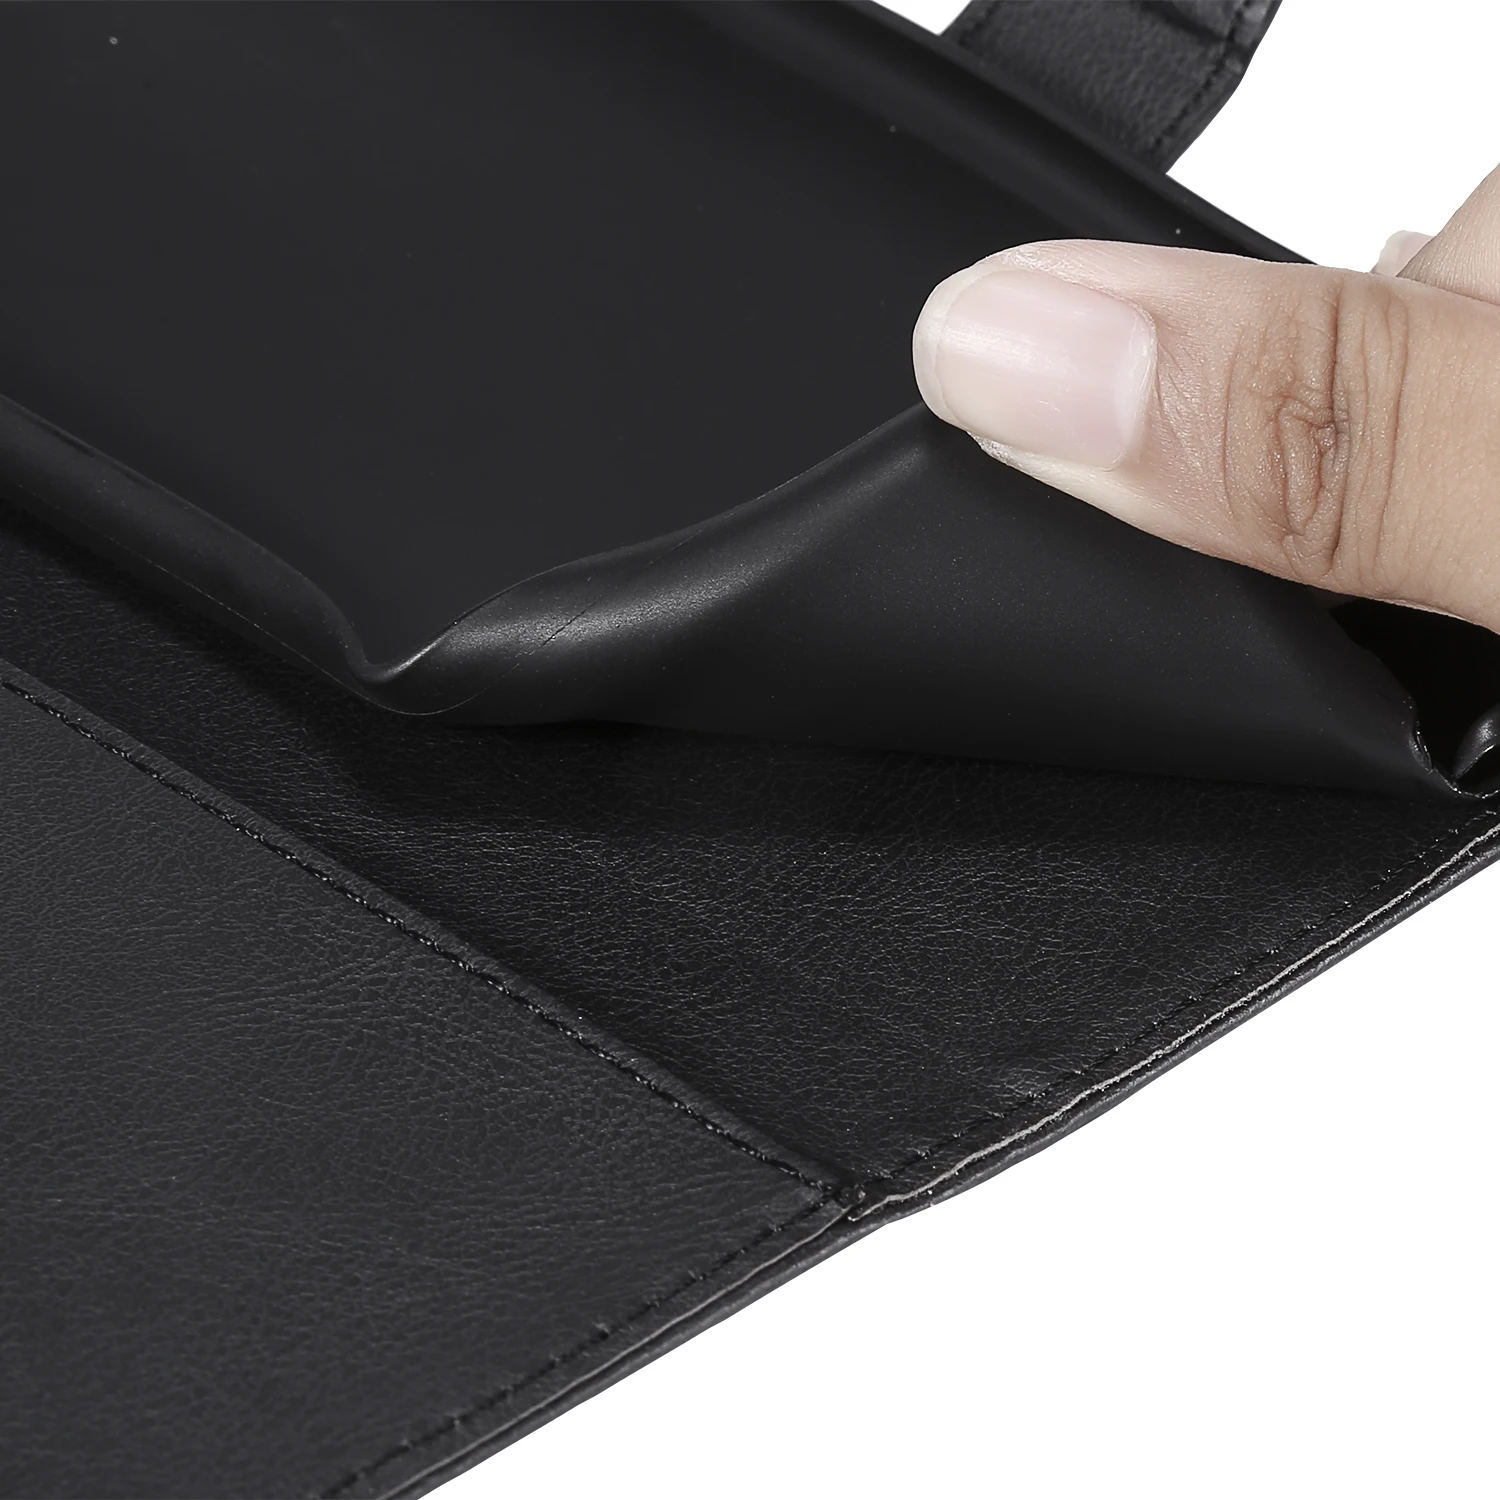 Кожаный бумажник чехол для телефона для samsung Galaxy A3 A5 J1 J3 J5 J7 Prime A7 A9 A8 A6 J4 J6 S6 S7 S8 S9 плюс флип сумка